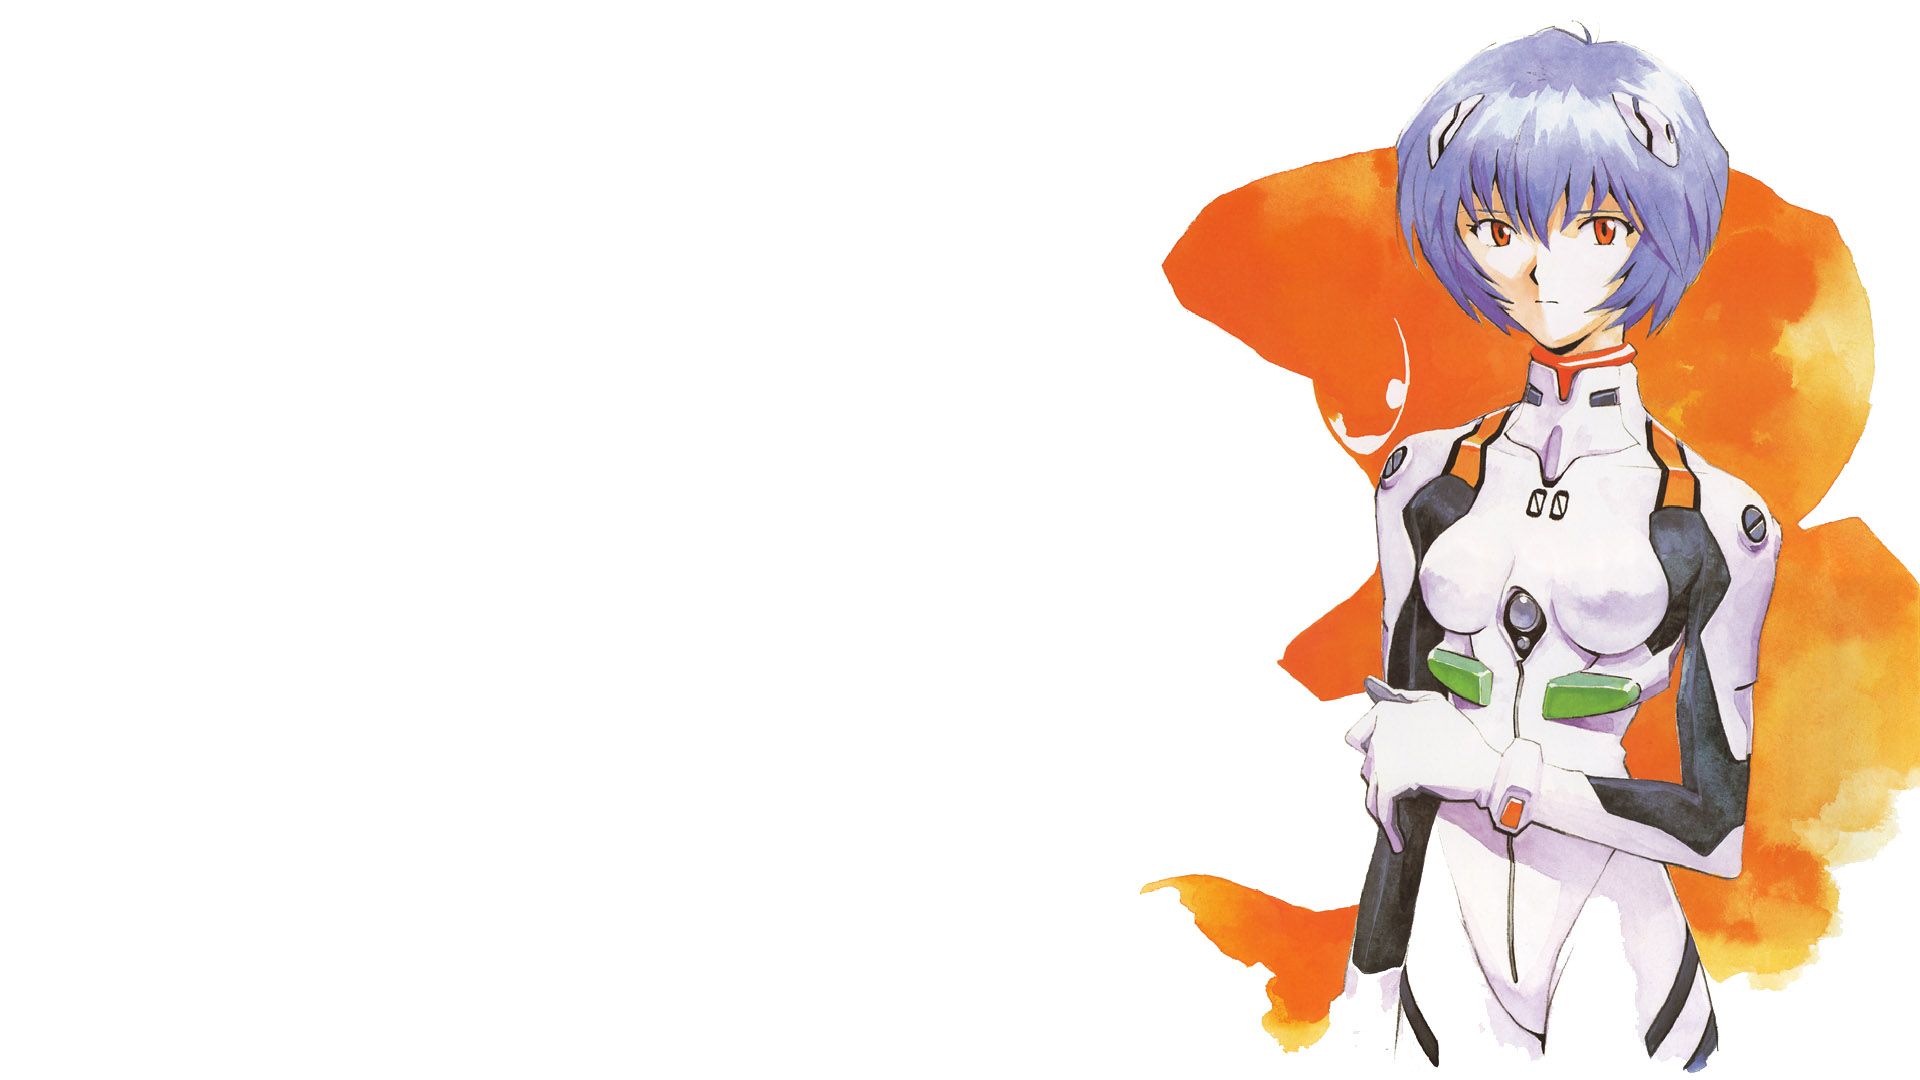 Descarga gratuita de fondo de pantalla para móvil de Evangelion, Animado, Neon Genesis Evangelion, Rei Ayanami.